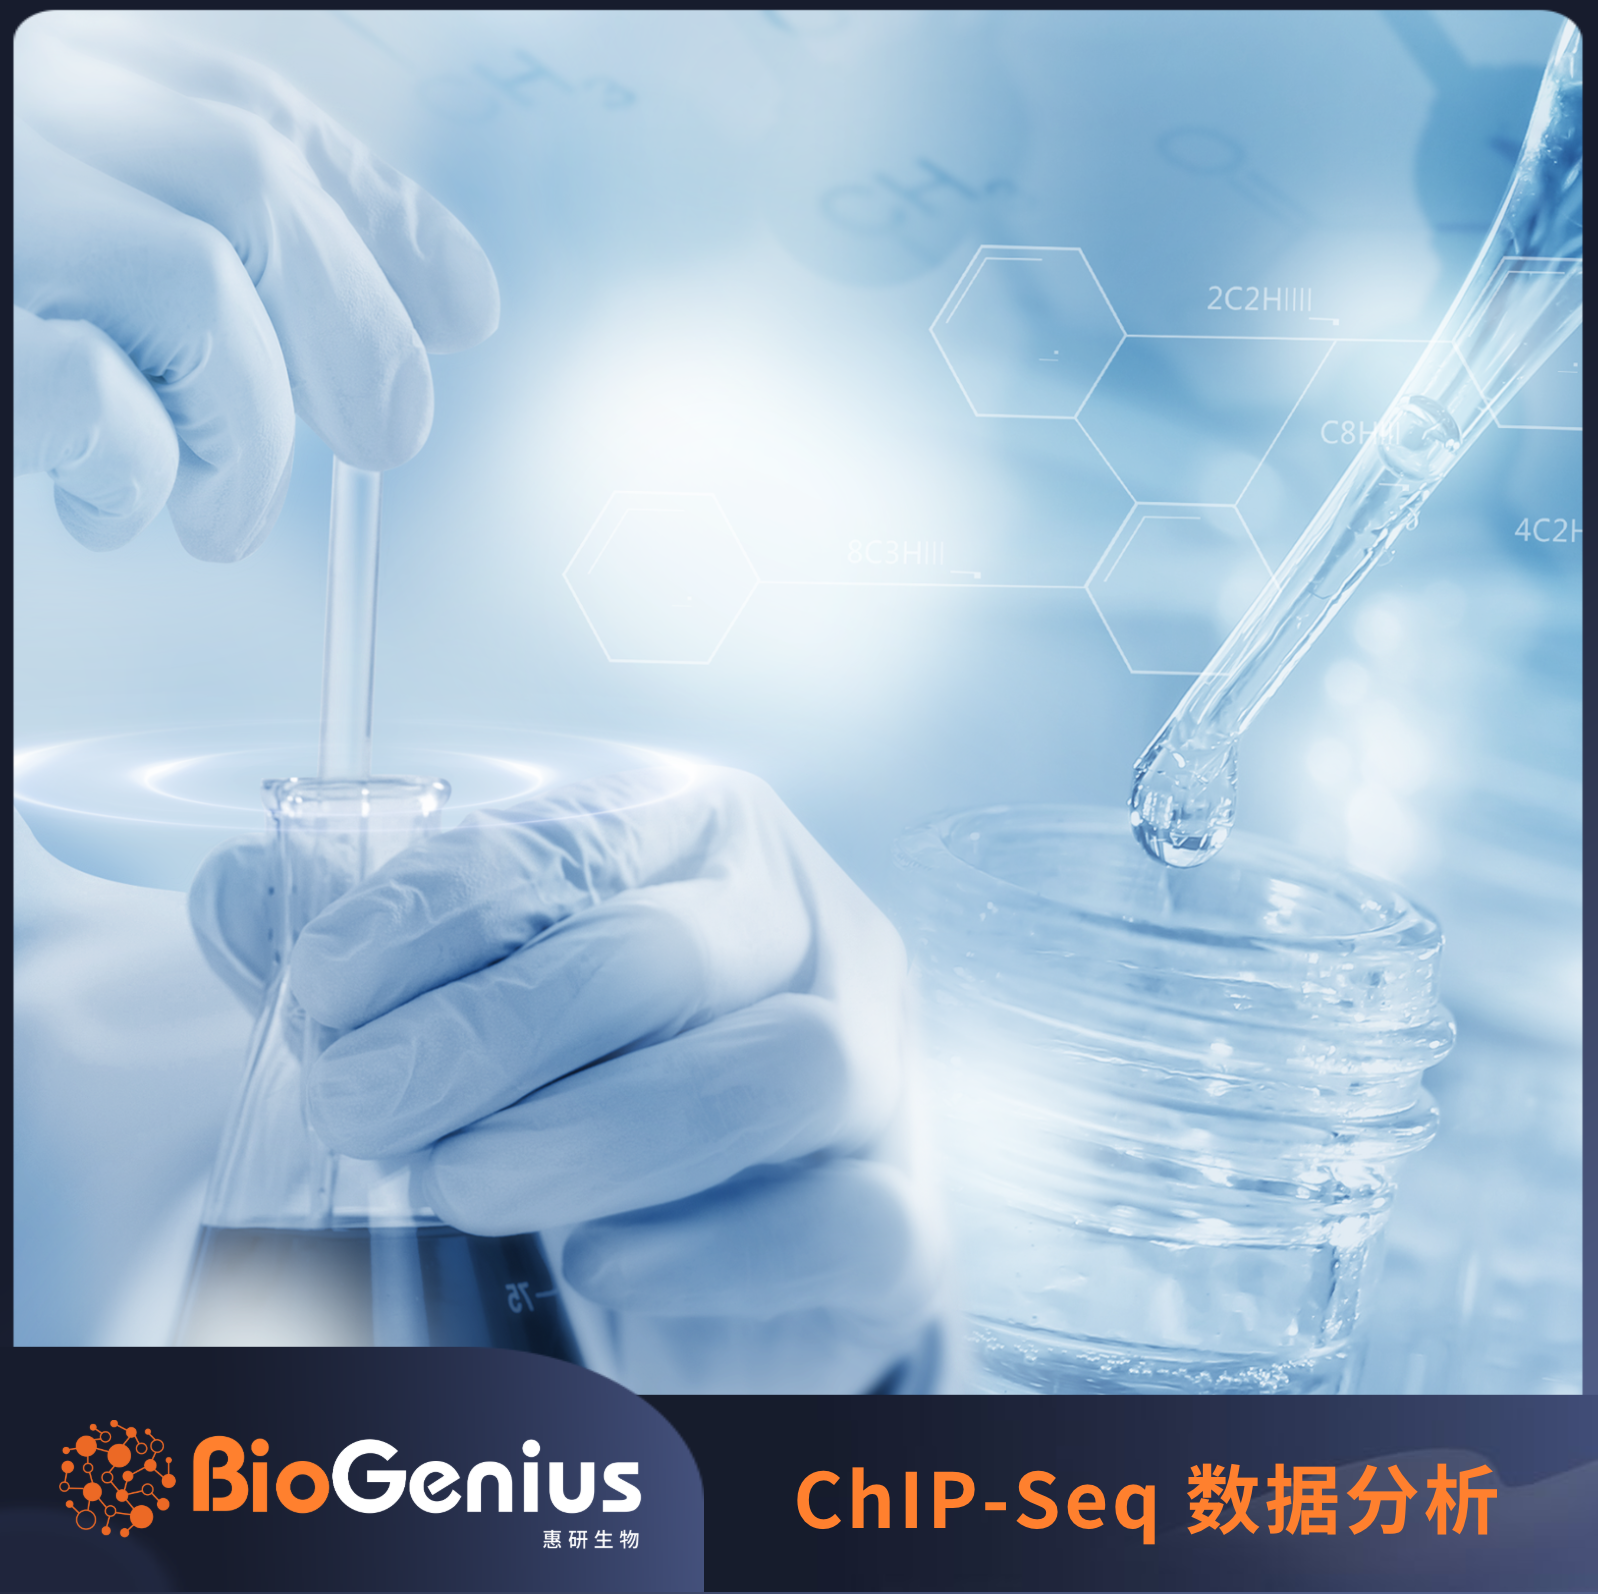 ChIP-Seq 转录因子结合位点的基序分析